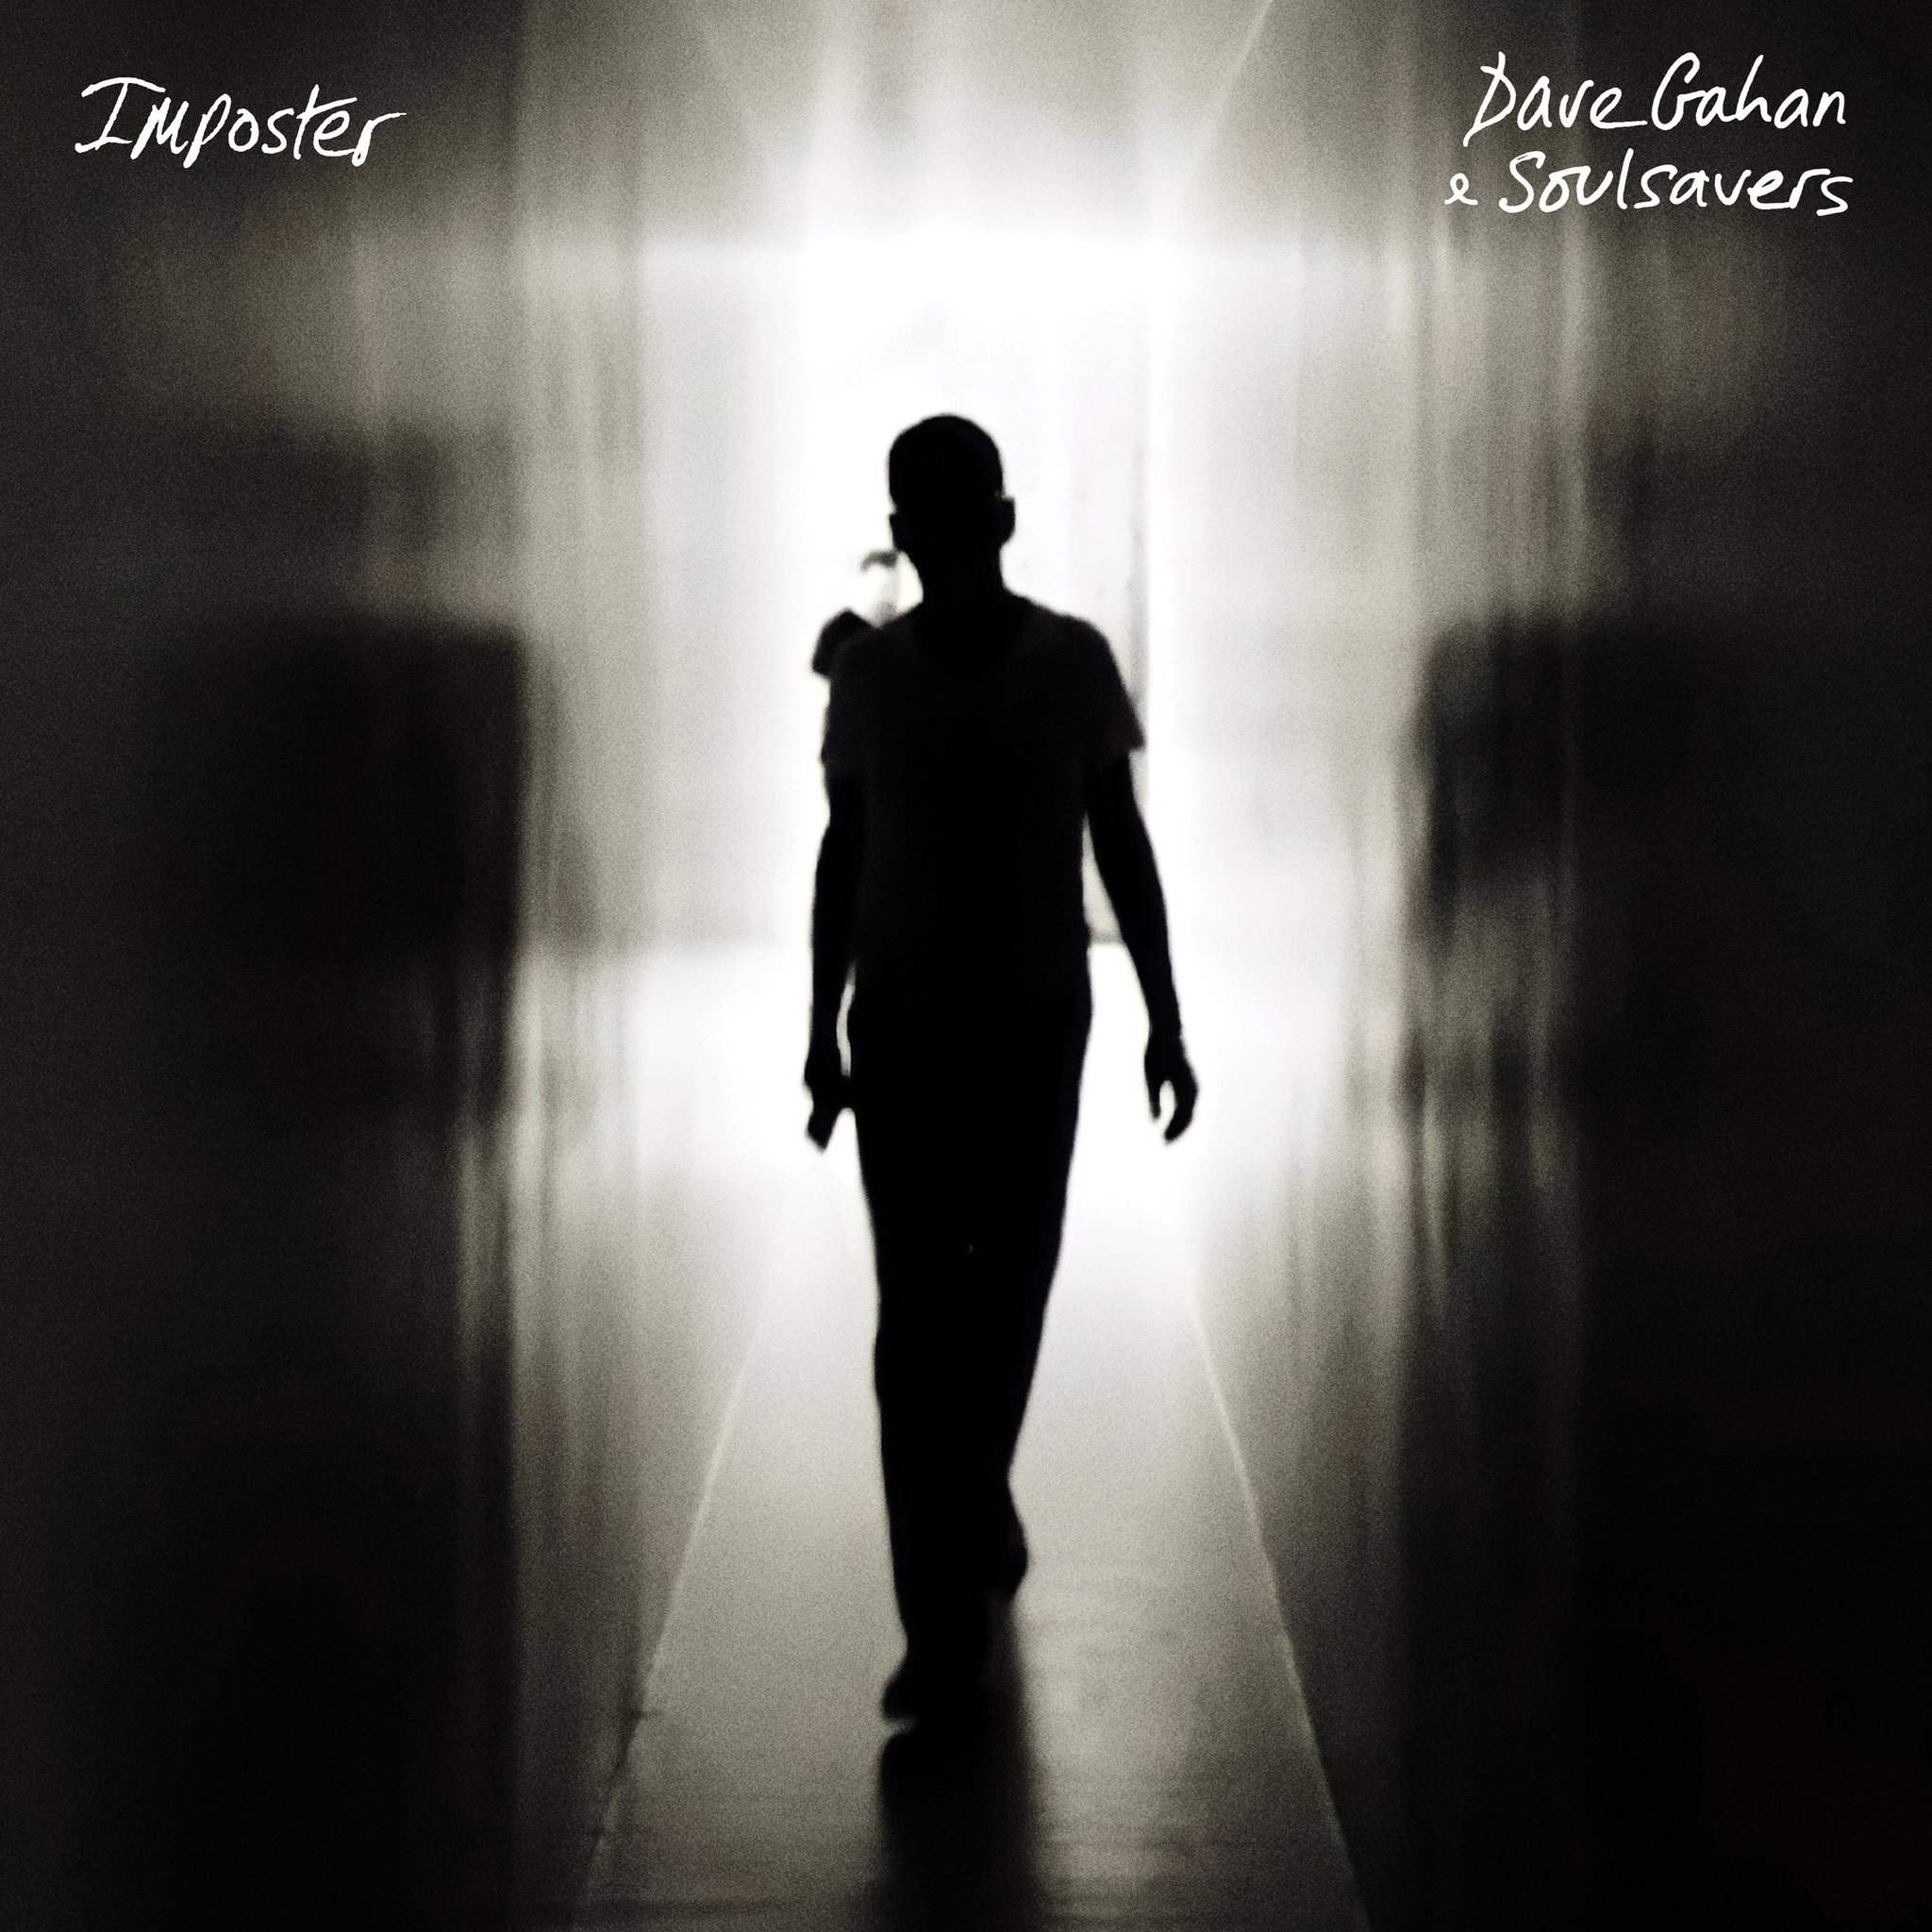 ALBUM REVIEW: Dave Gahan & Soulsavers – Imposter 